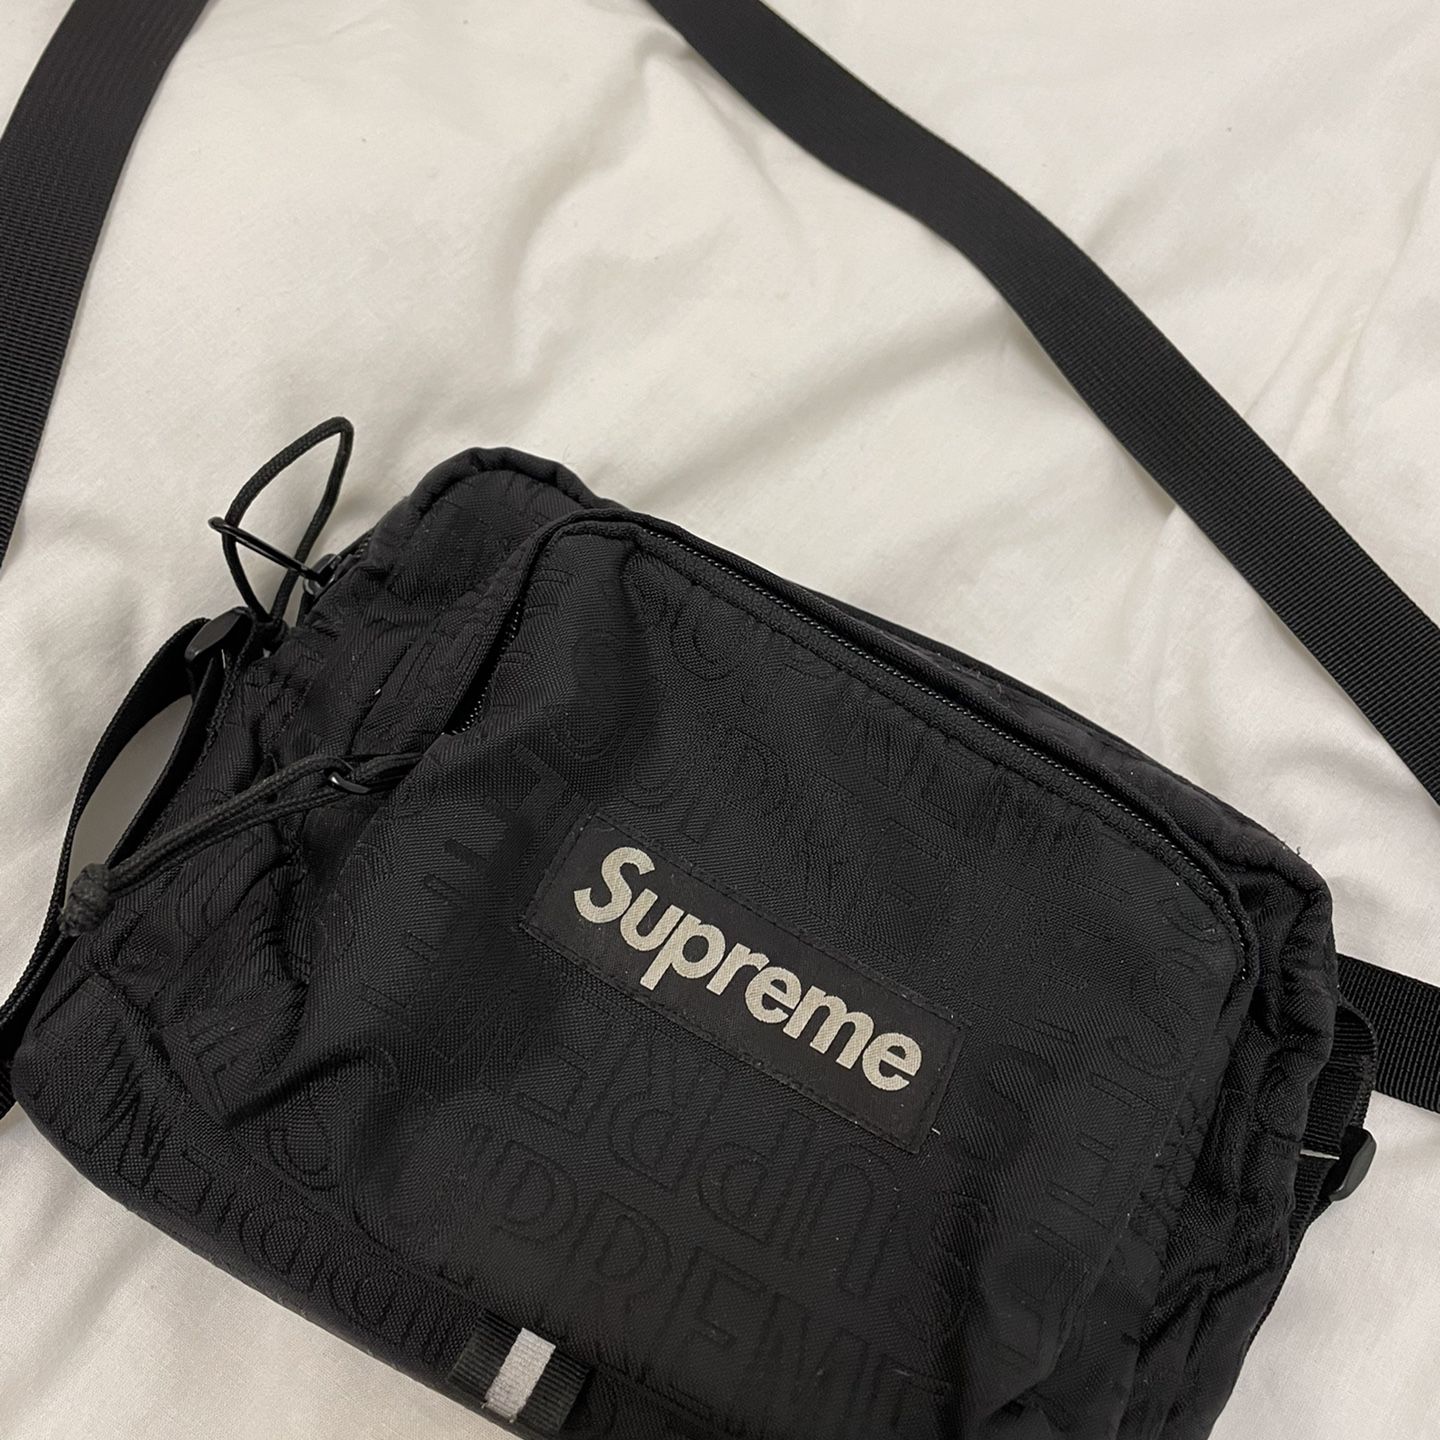 Supreme Shoulder Bag FW18 for Sale in Kansas City, KS - OfferUp